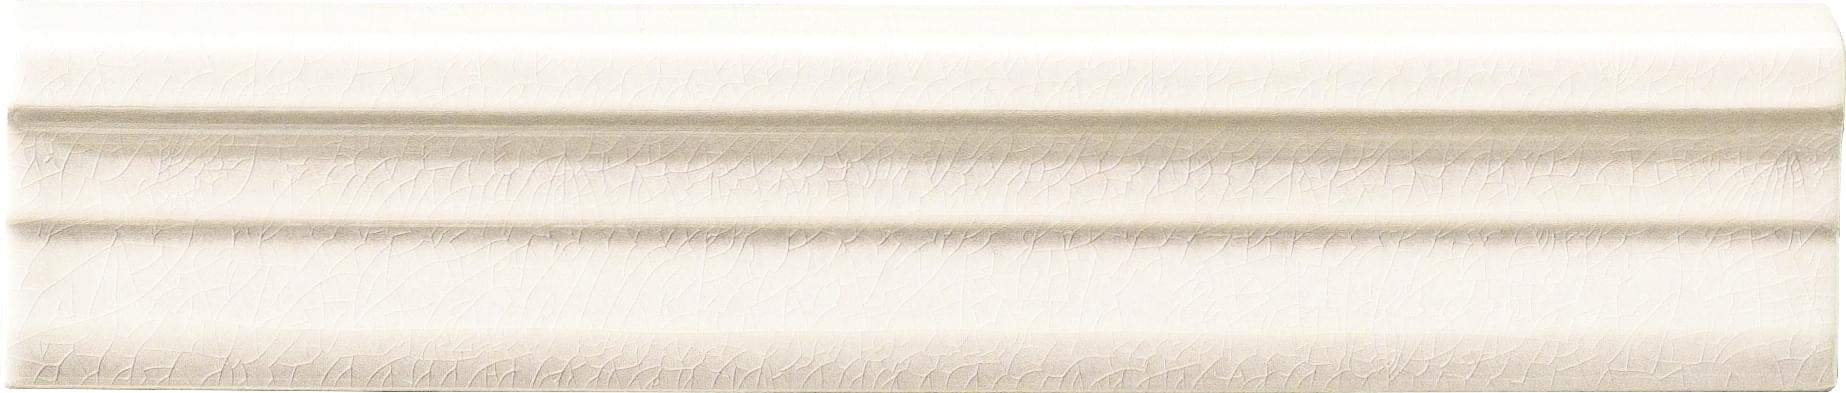 Ceramiche Grazia Impressions Toro White 5.5x26